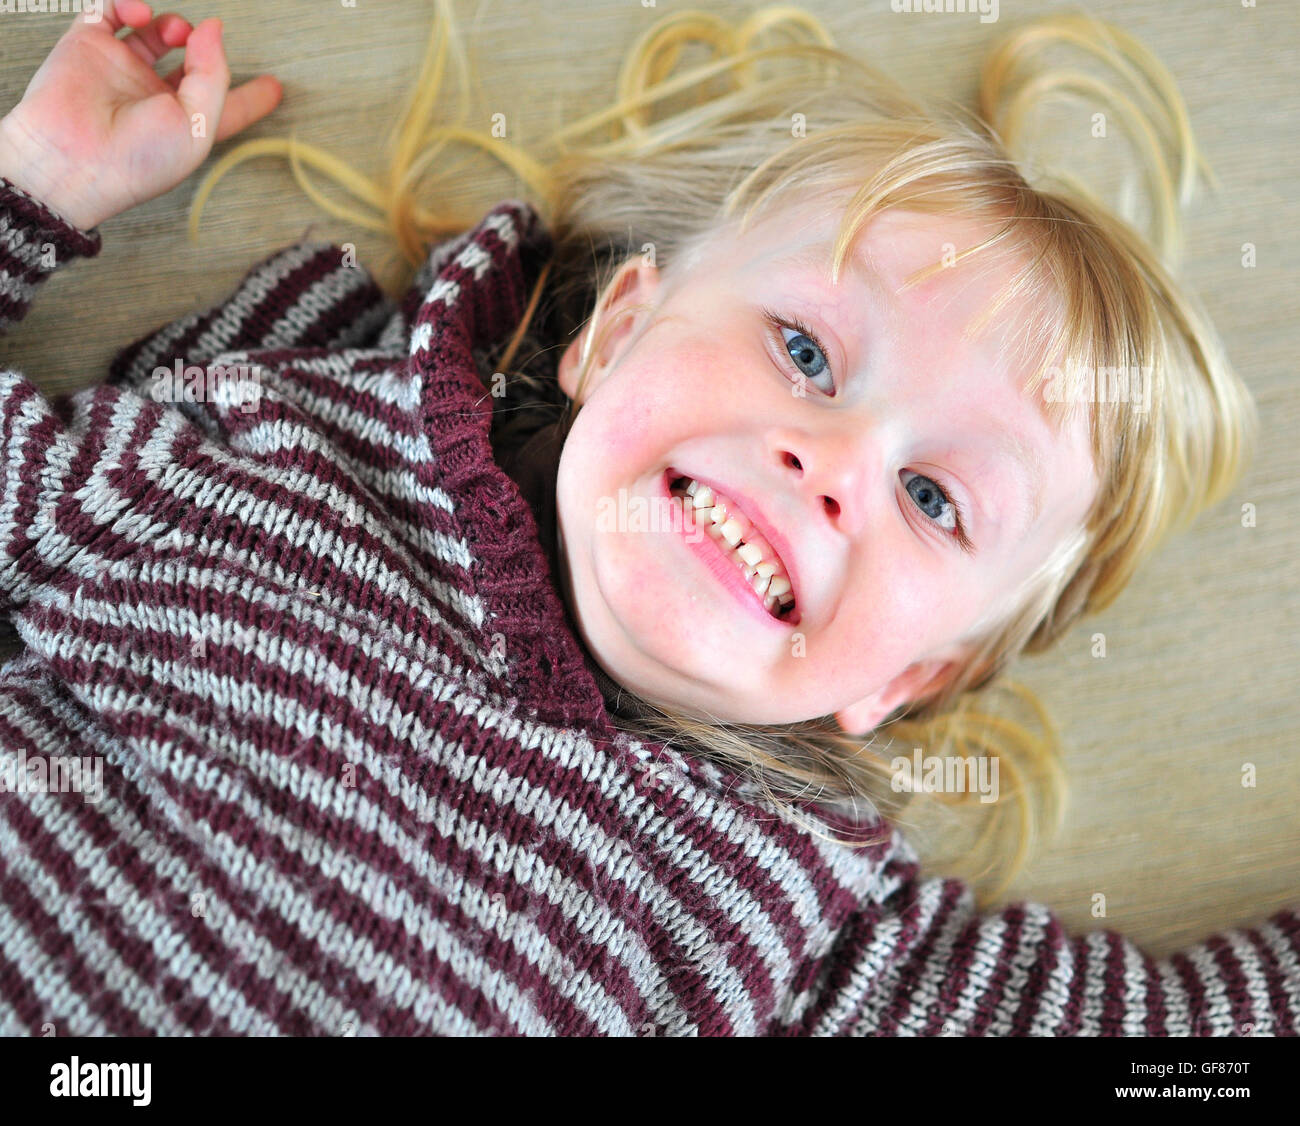 Cute smiling baby avec une longue chevelure blonde allongée sur le lit Banque D'Images